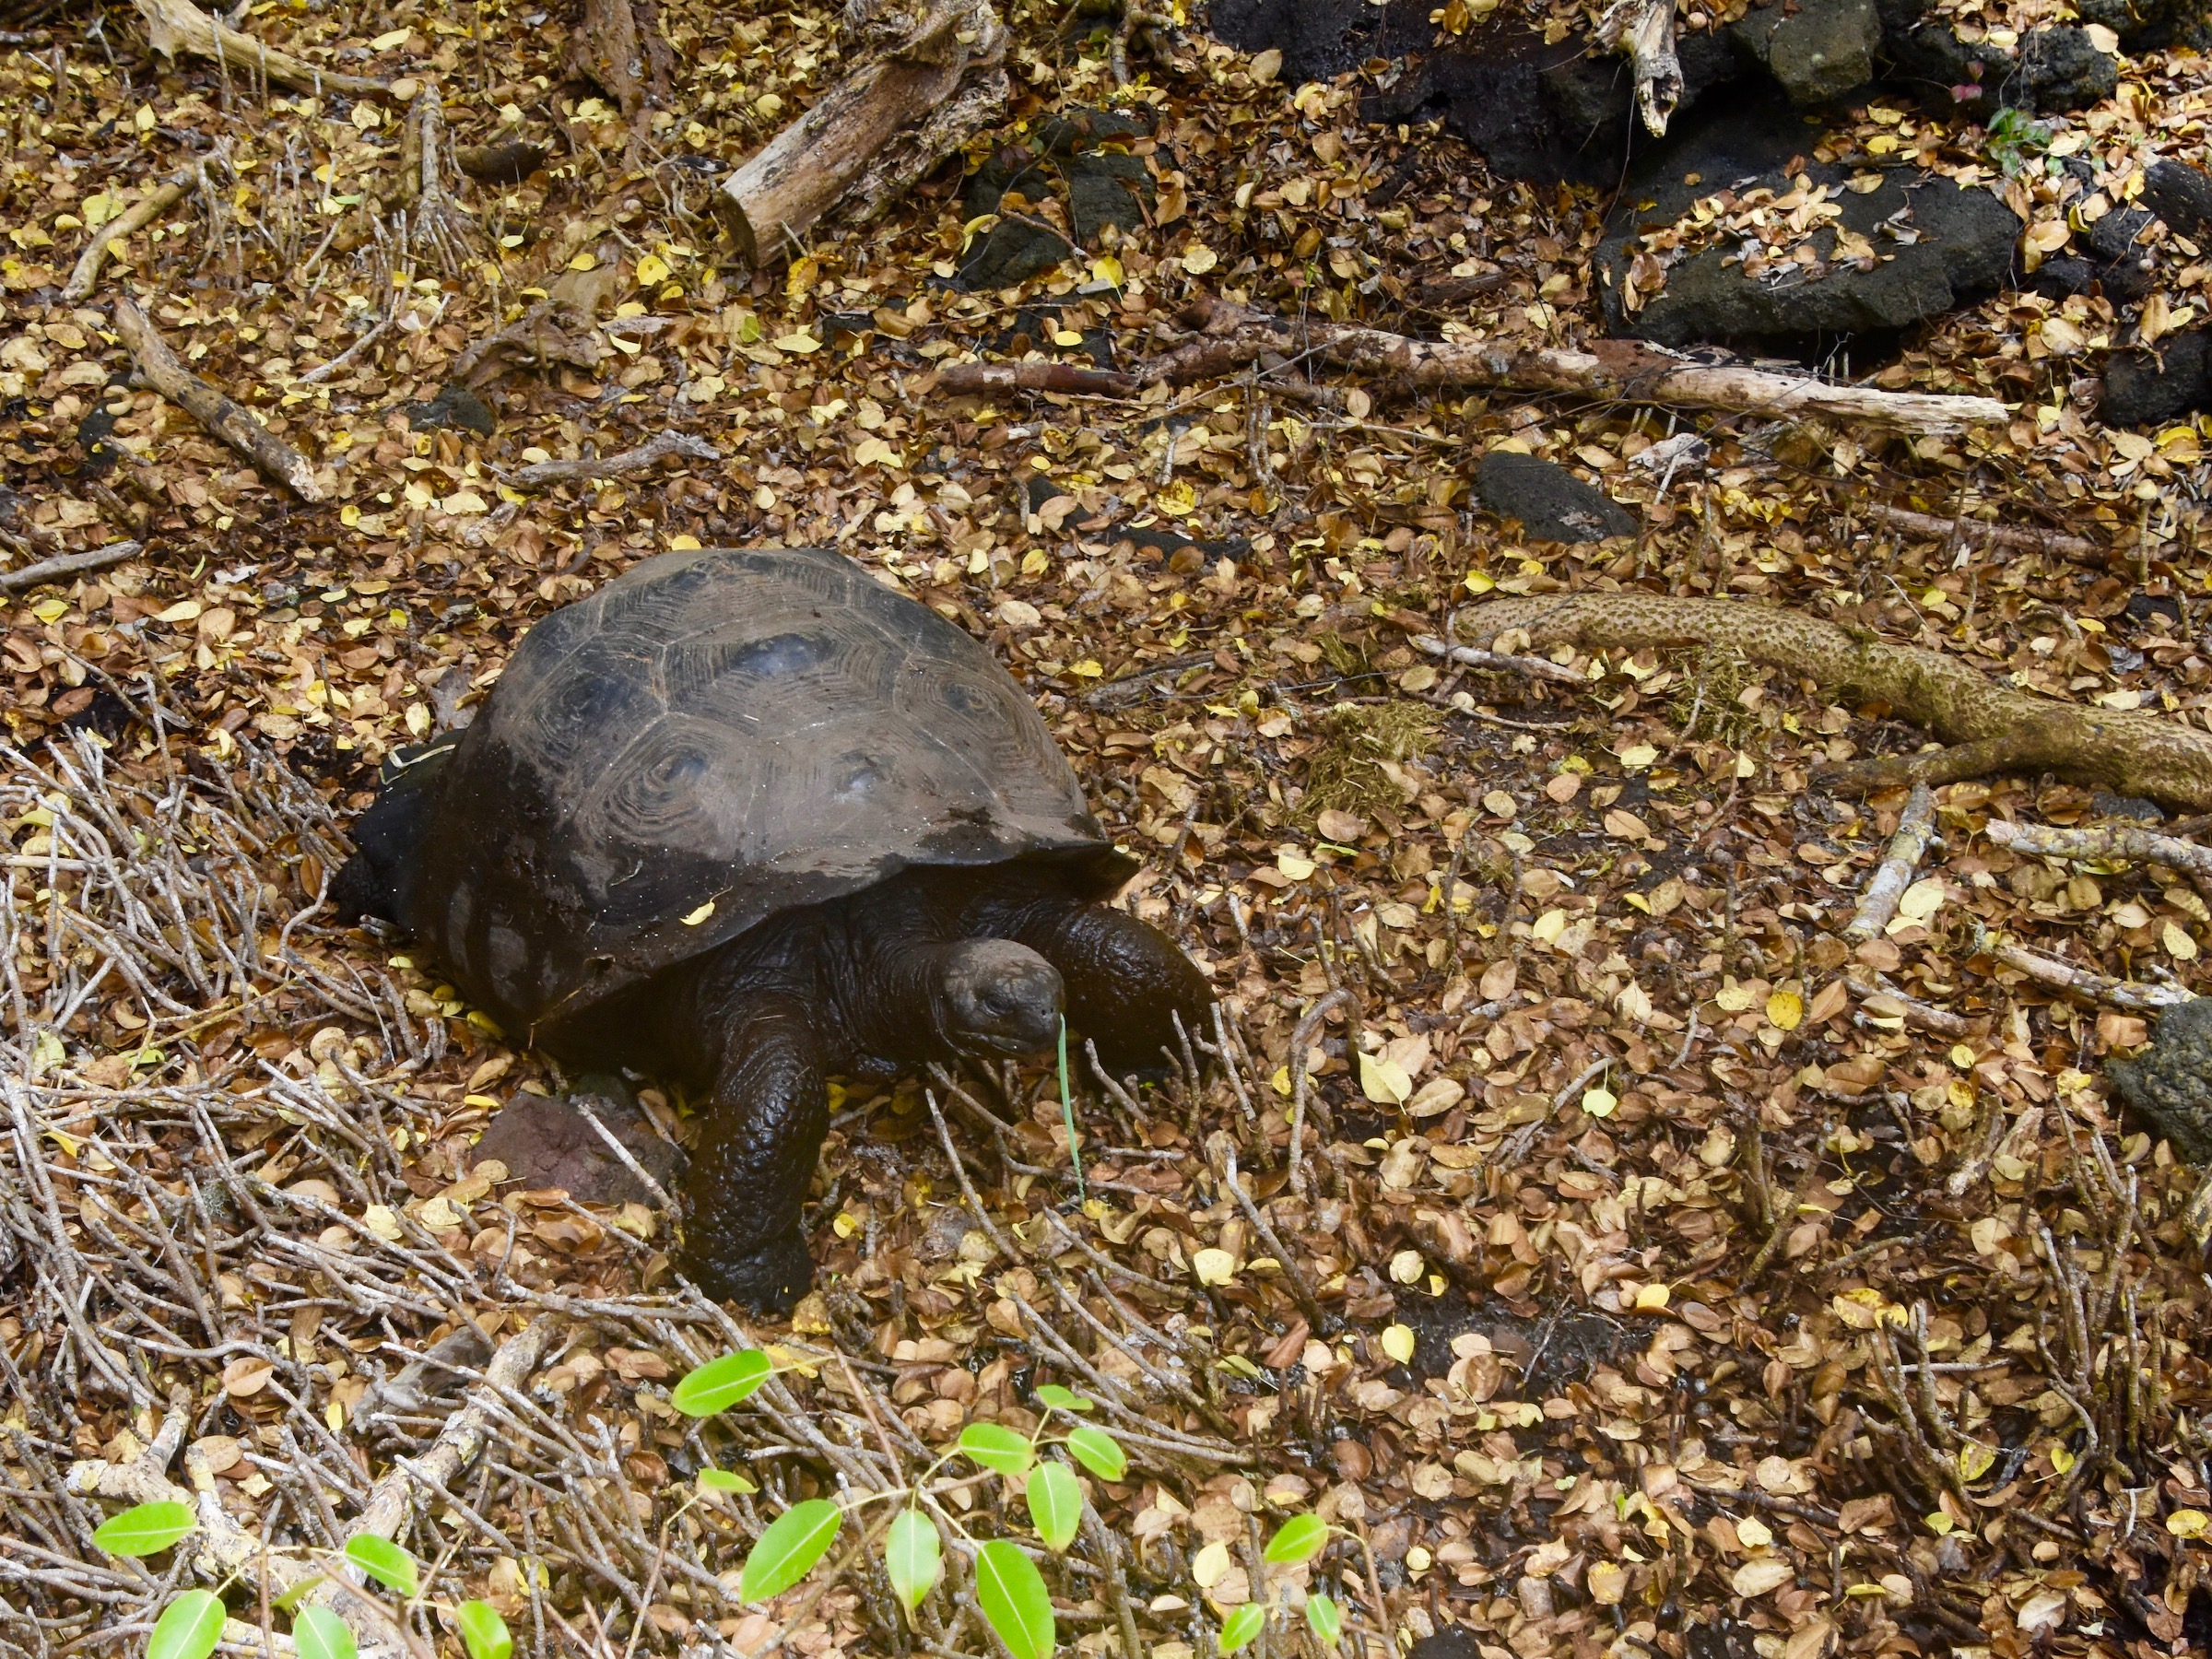 One of the Wild Giant Tortoises